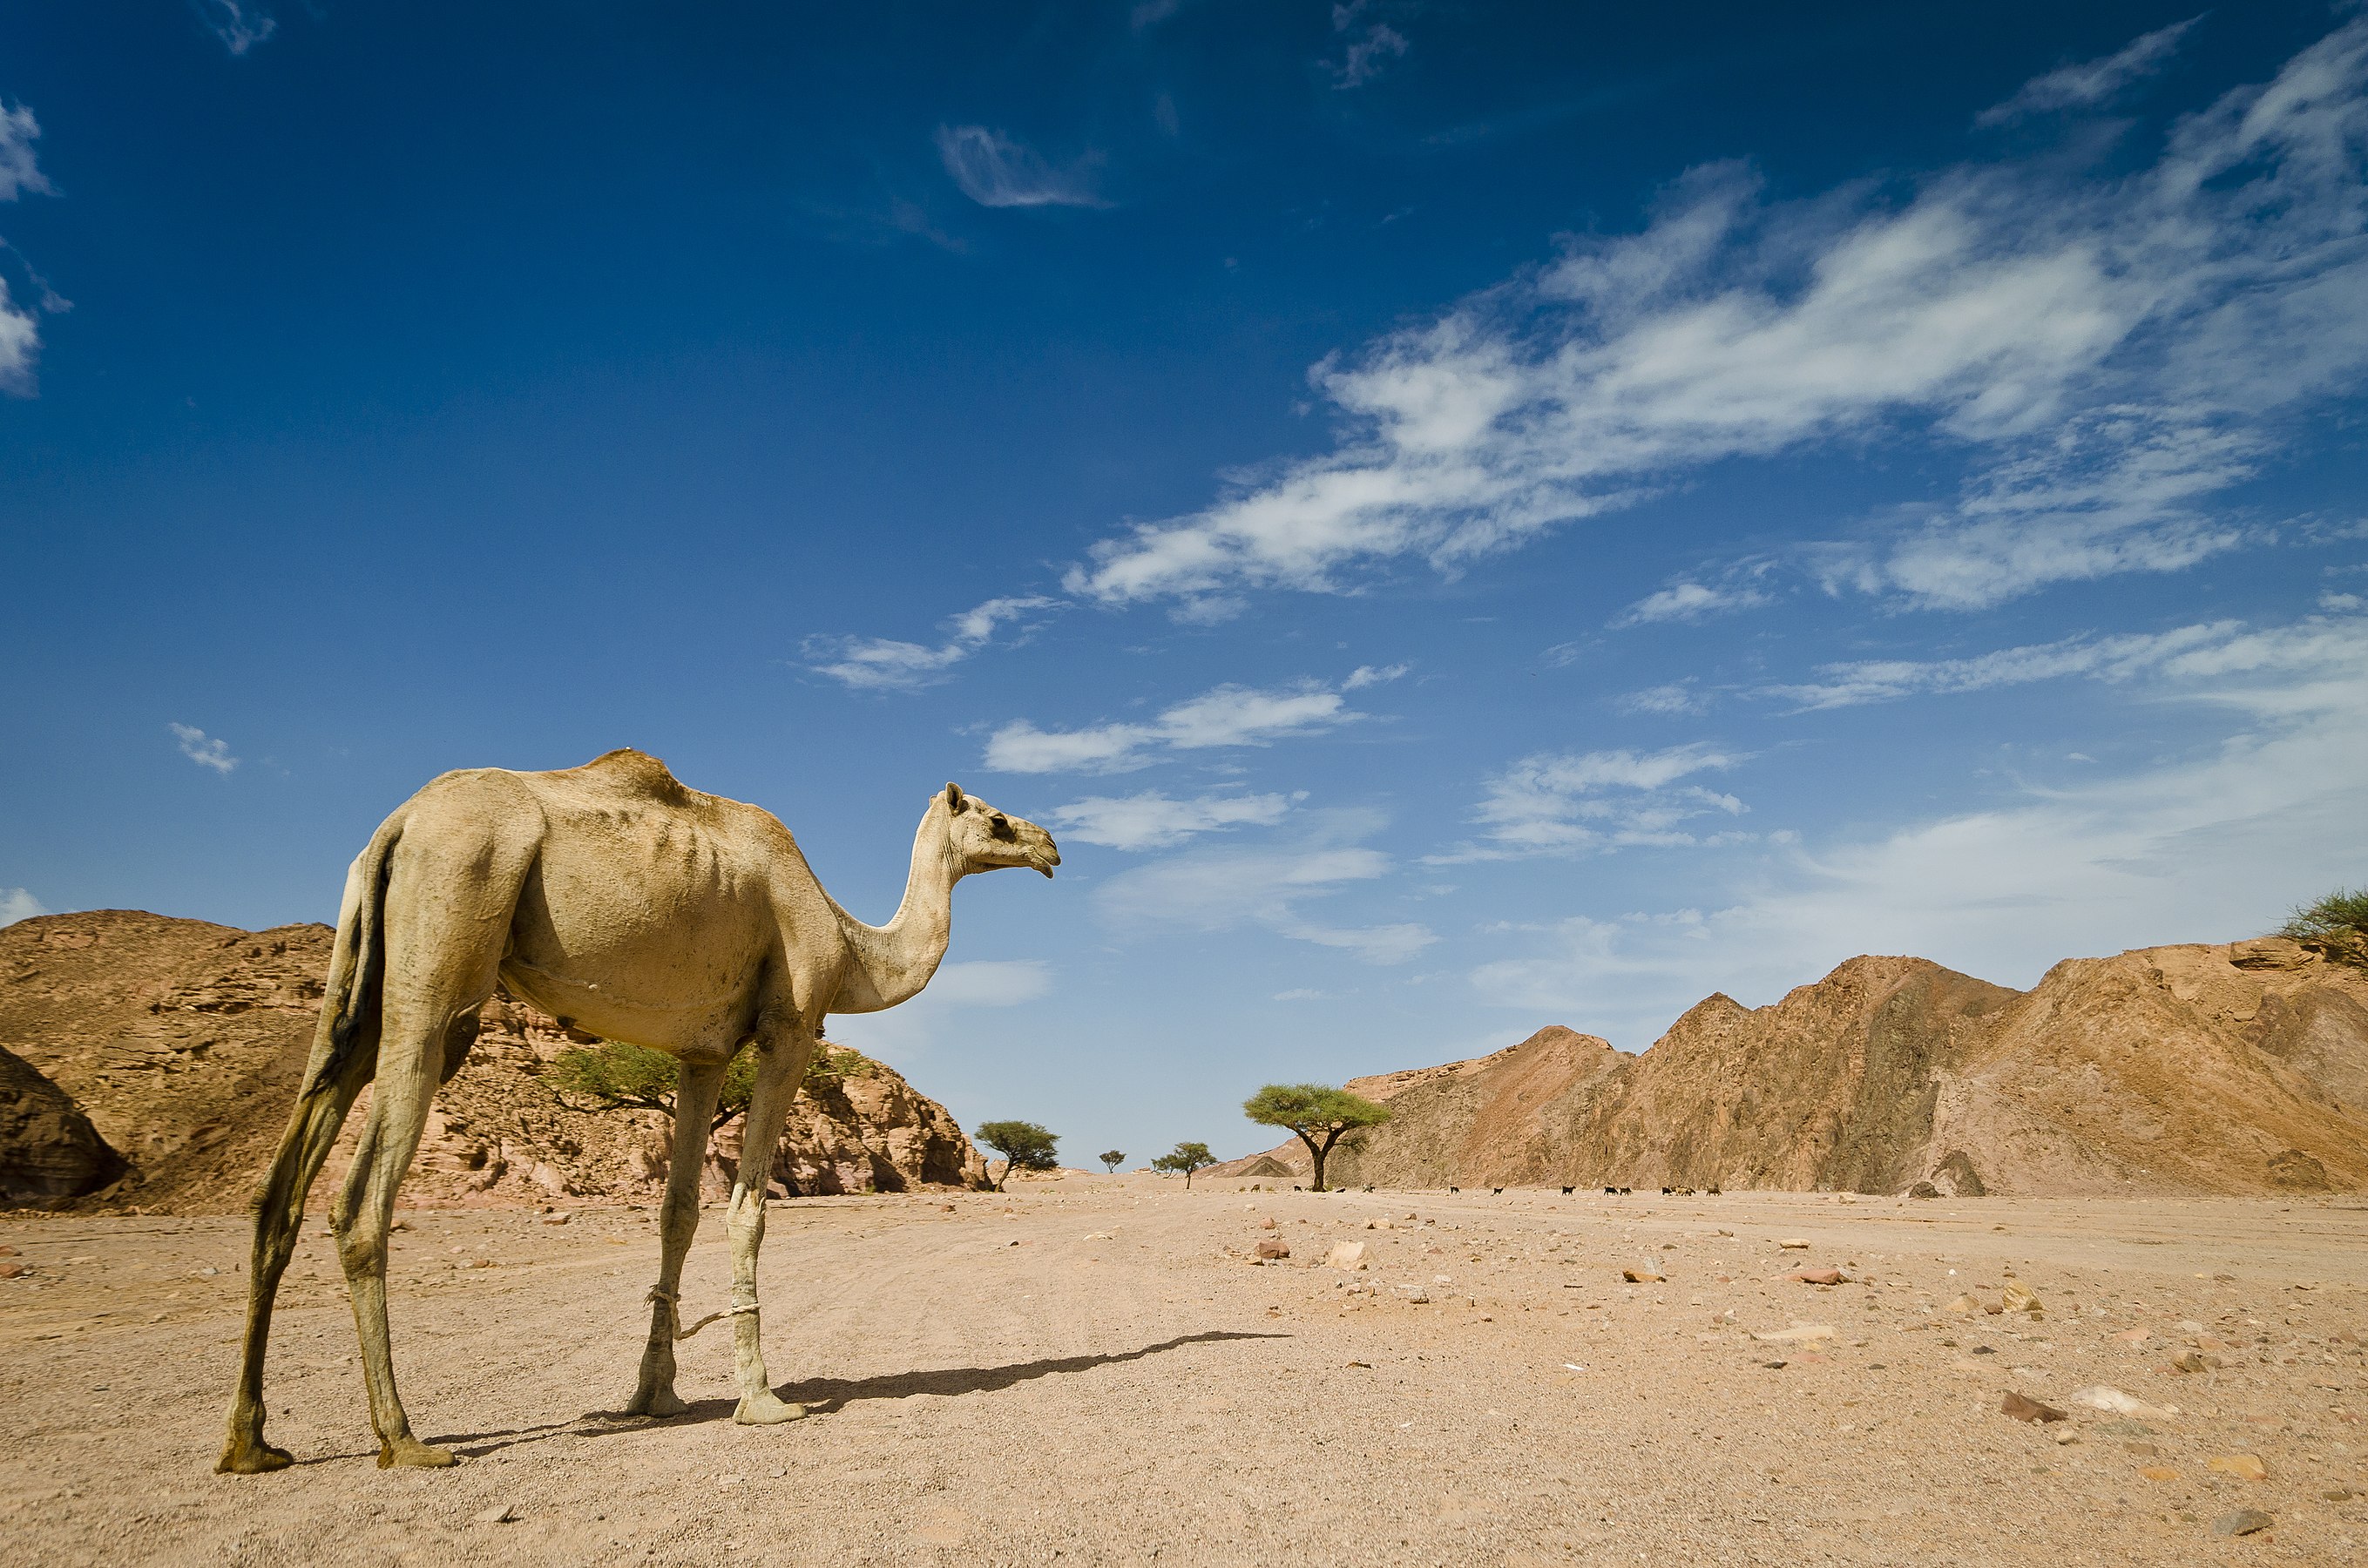 Camel in the Egyptian desert Photograph: Mohammed Moussa